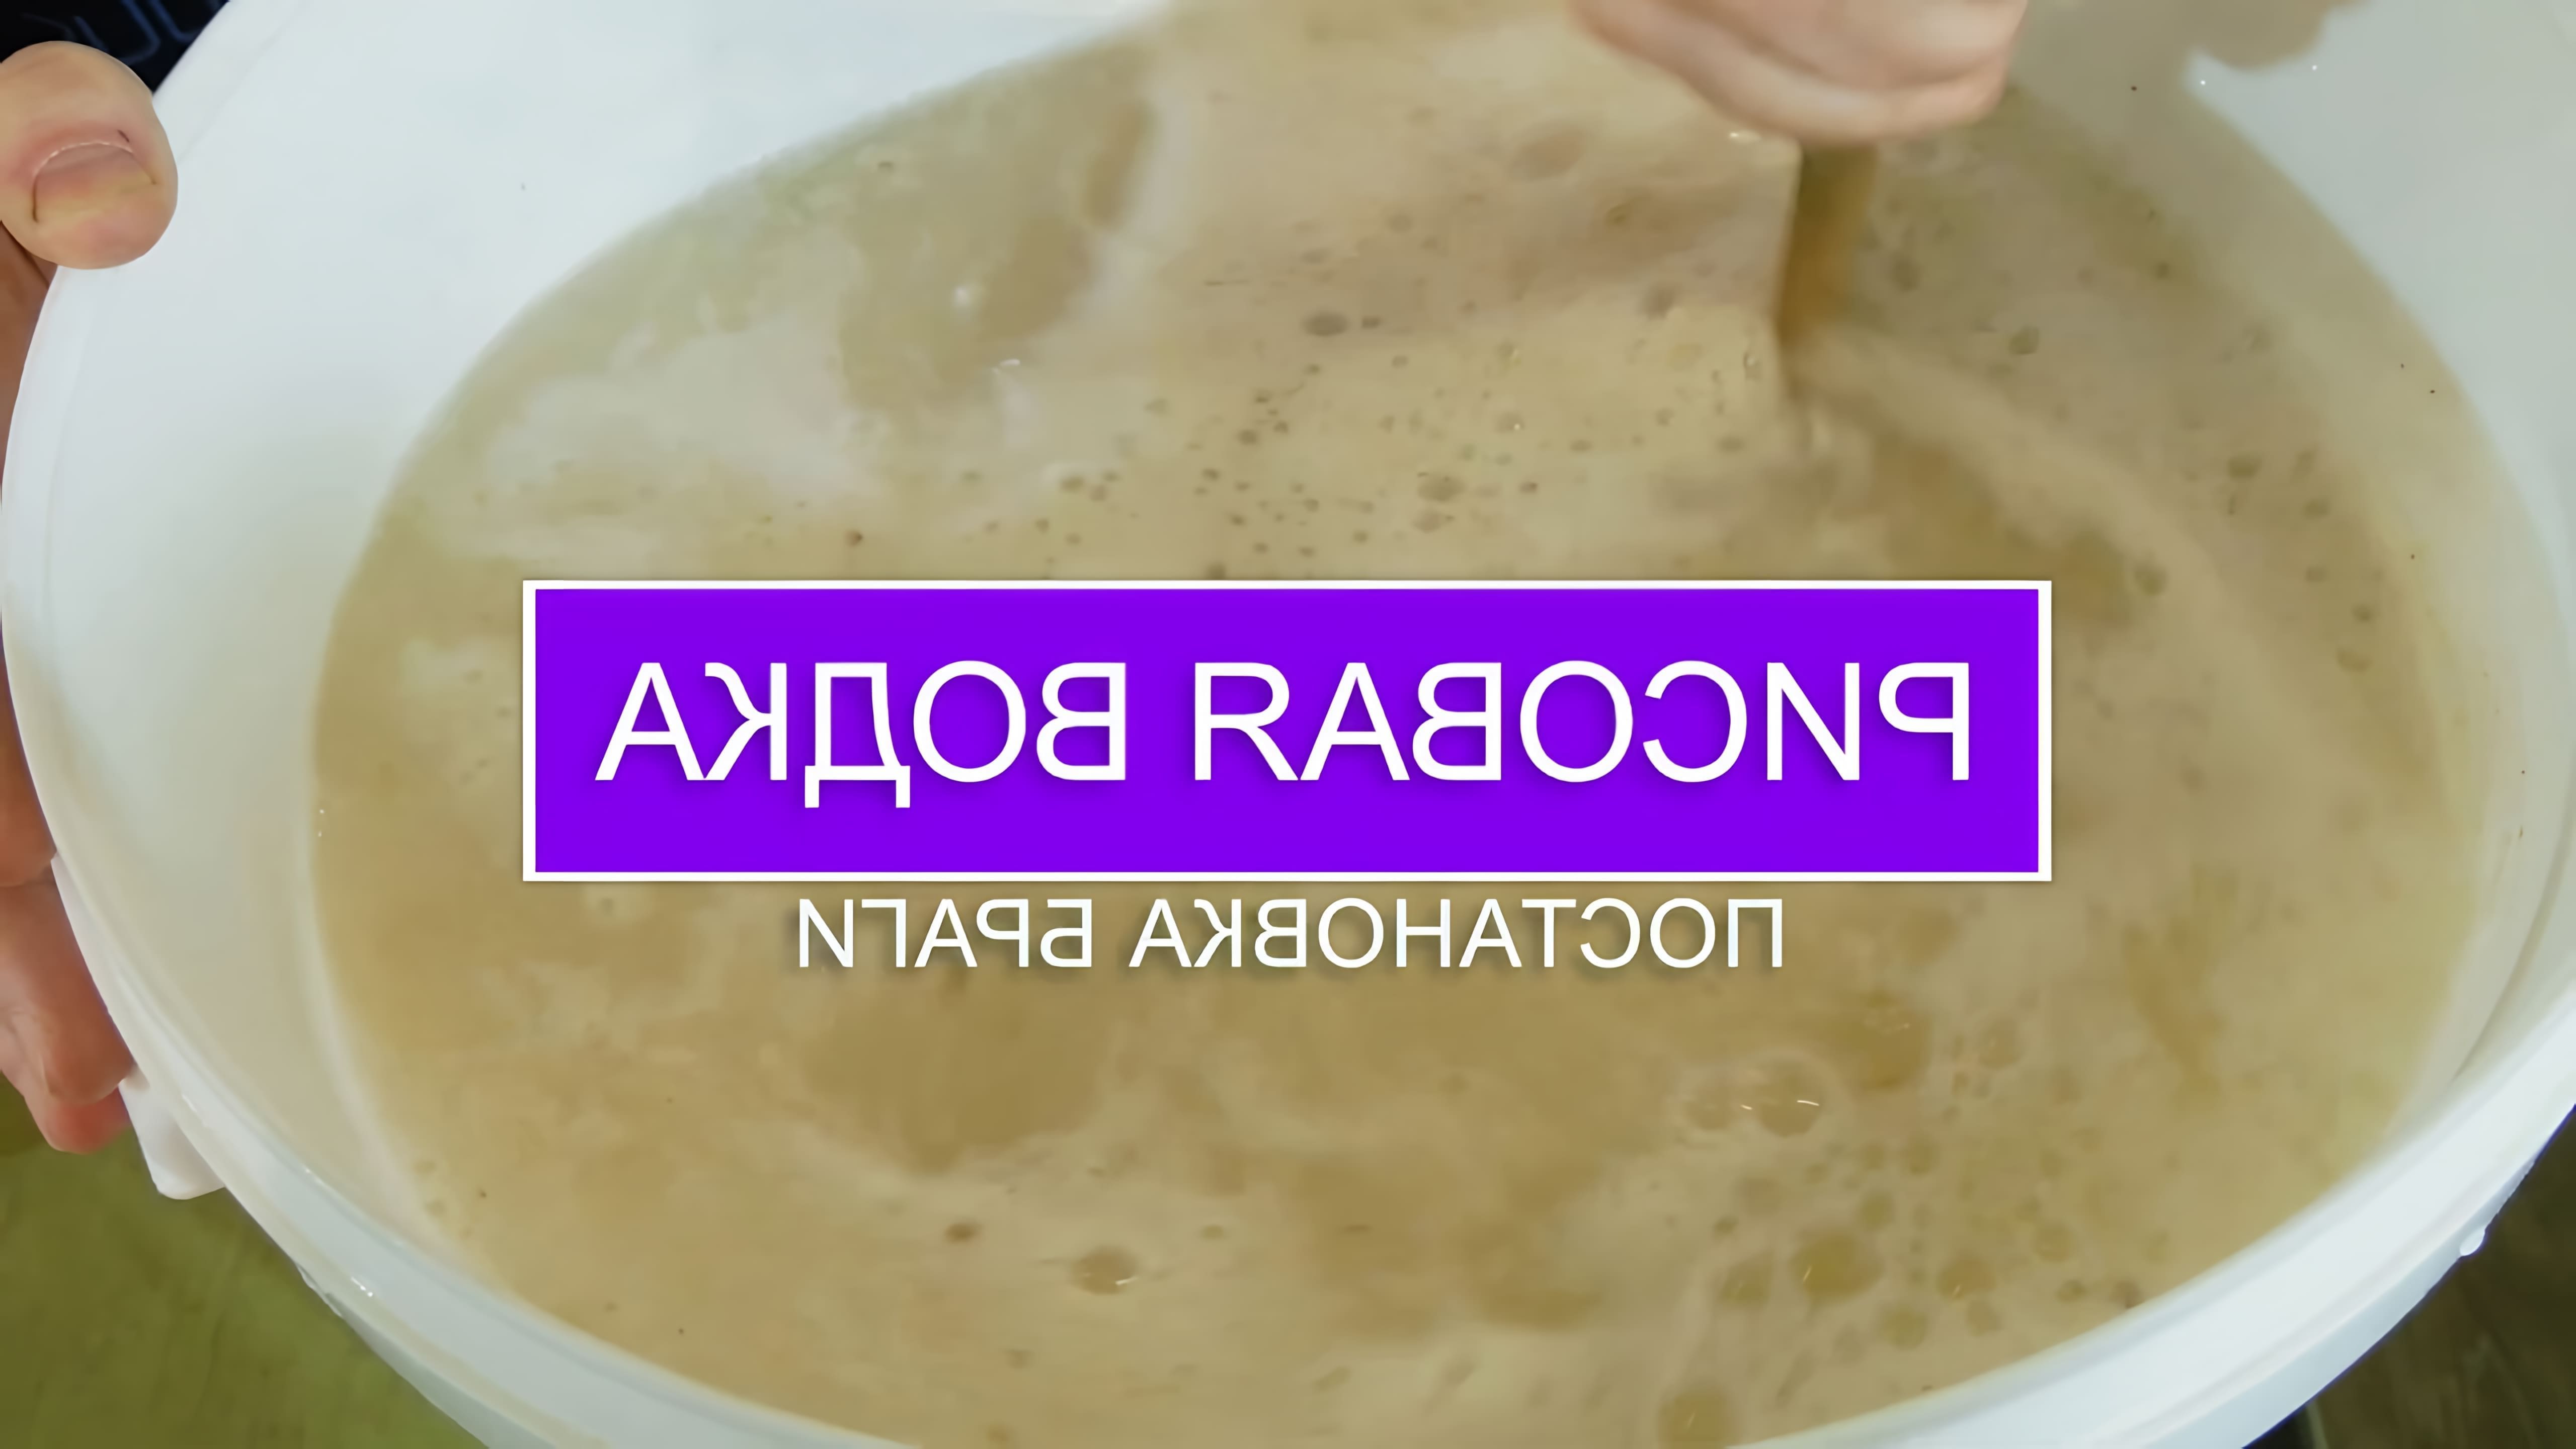 В данном видео демонстрируется процесс приготовления рисовой водки с использованием дрожжей Кодзи